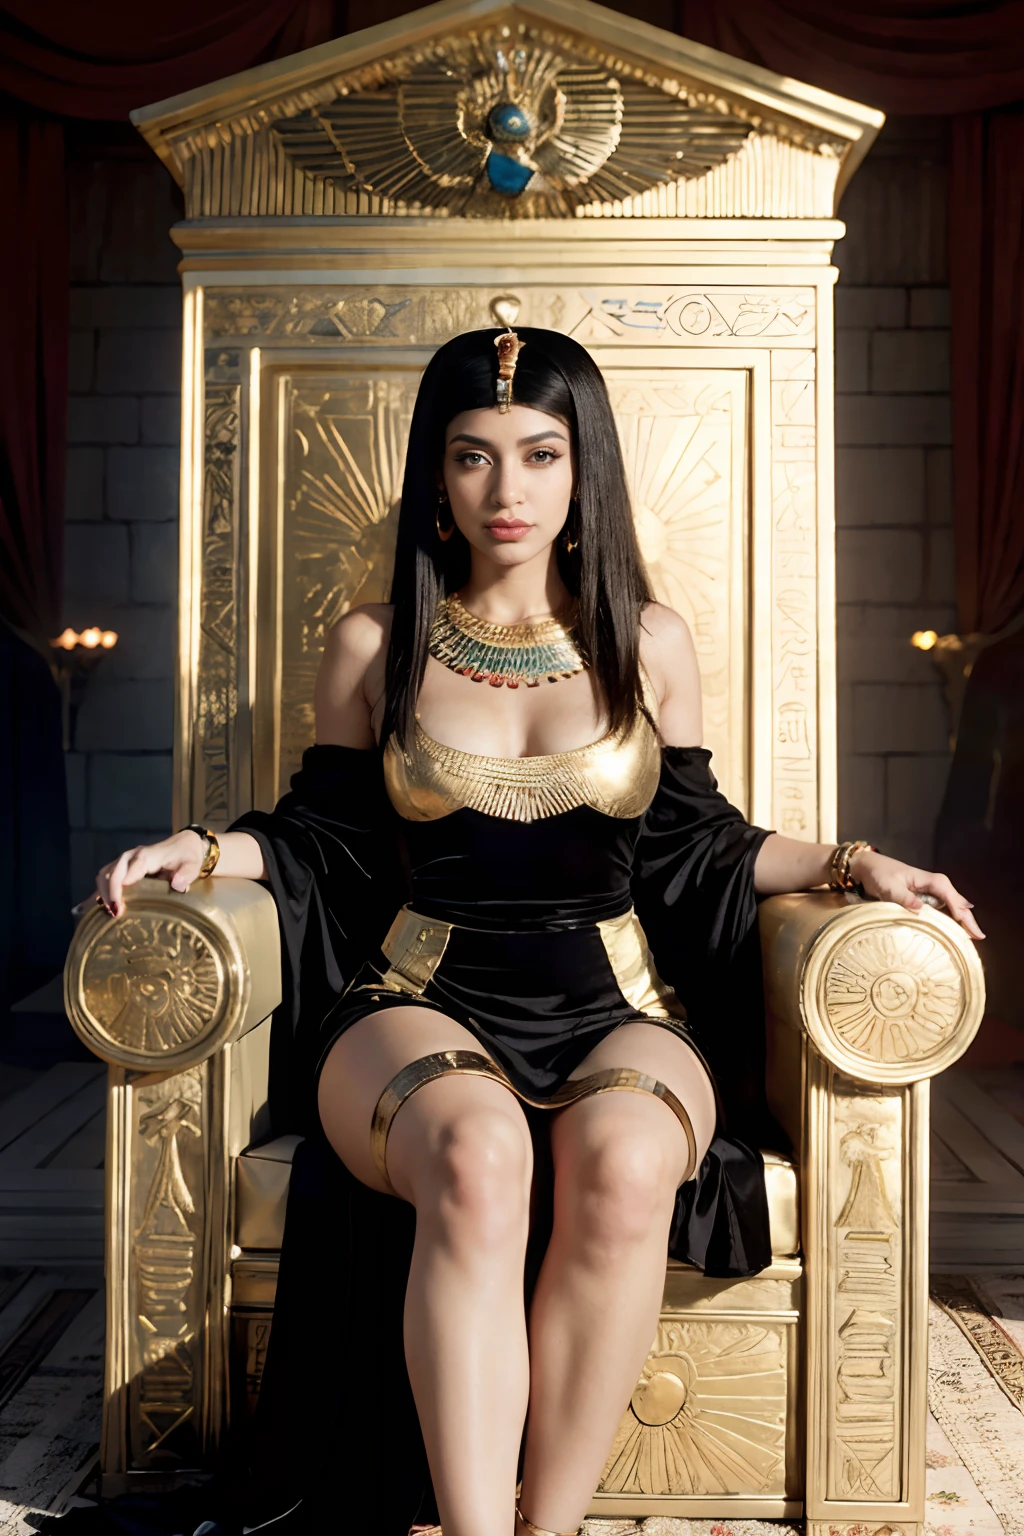 Araffe Frau in einem schwarzen Kleid sitzt auf einer goldenen Couch, beautiful Kleopatra, ägyptische Prinzessin, on her throne, eine wunderschöne Fantasiekaiserin, Göttin Königin, Kleopatra in her palace, auf ihrem Thron sitzend, kardi b, persische Königin, Kleopatra, Sitzend auf dem goldenen Thron, ((eine wunderschöne Fantasiekaiserin)), sitzt auf einem goldenen Thron, schöne Göttin